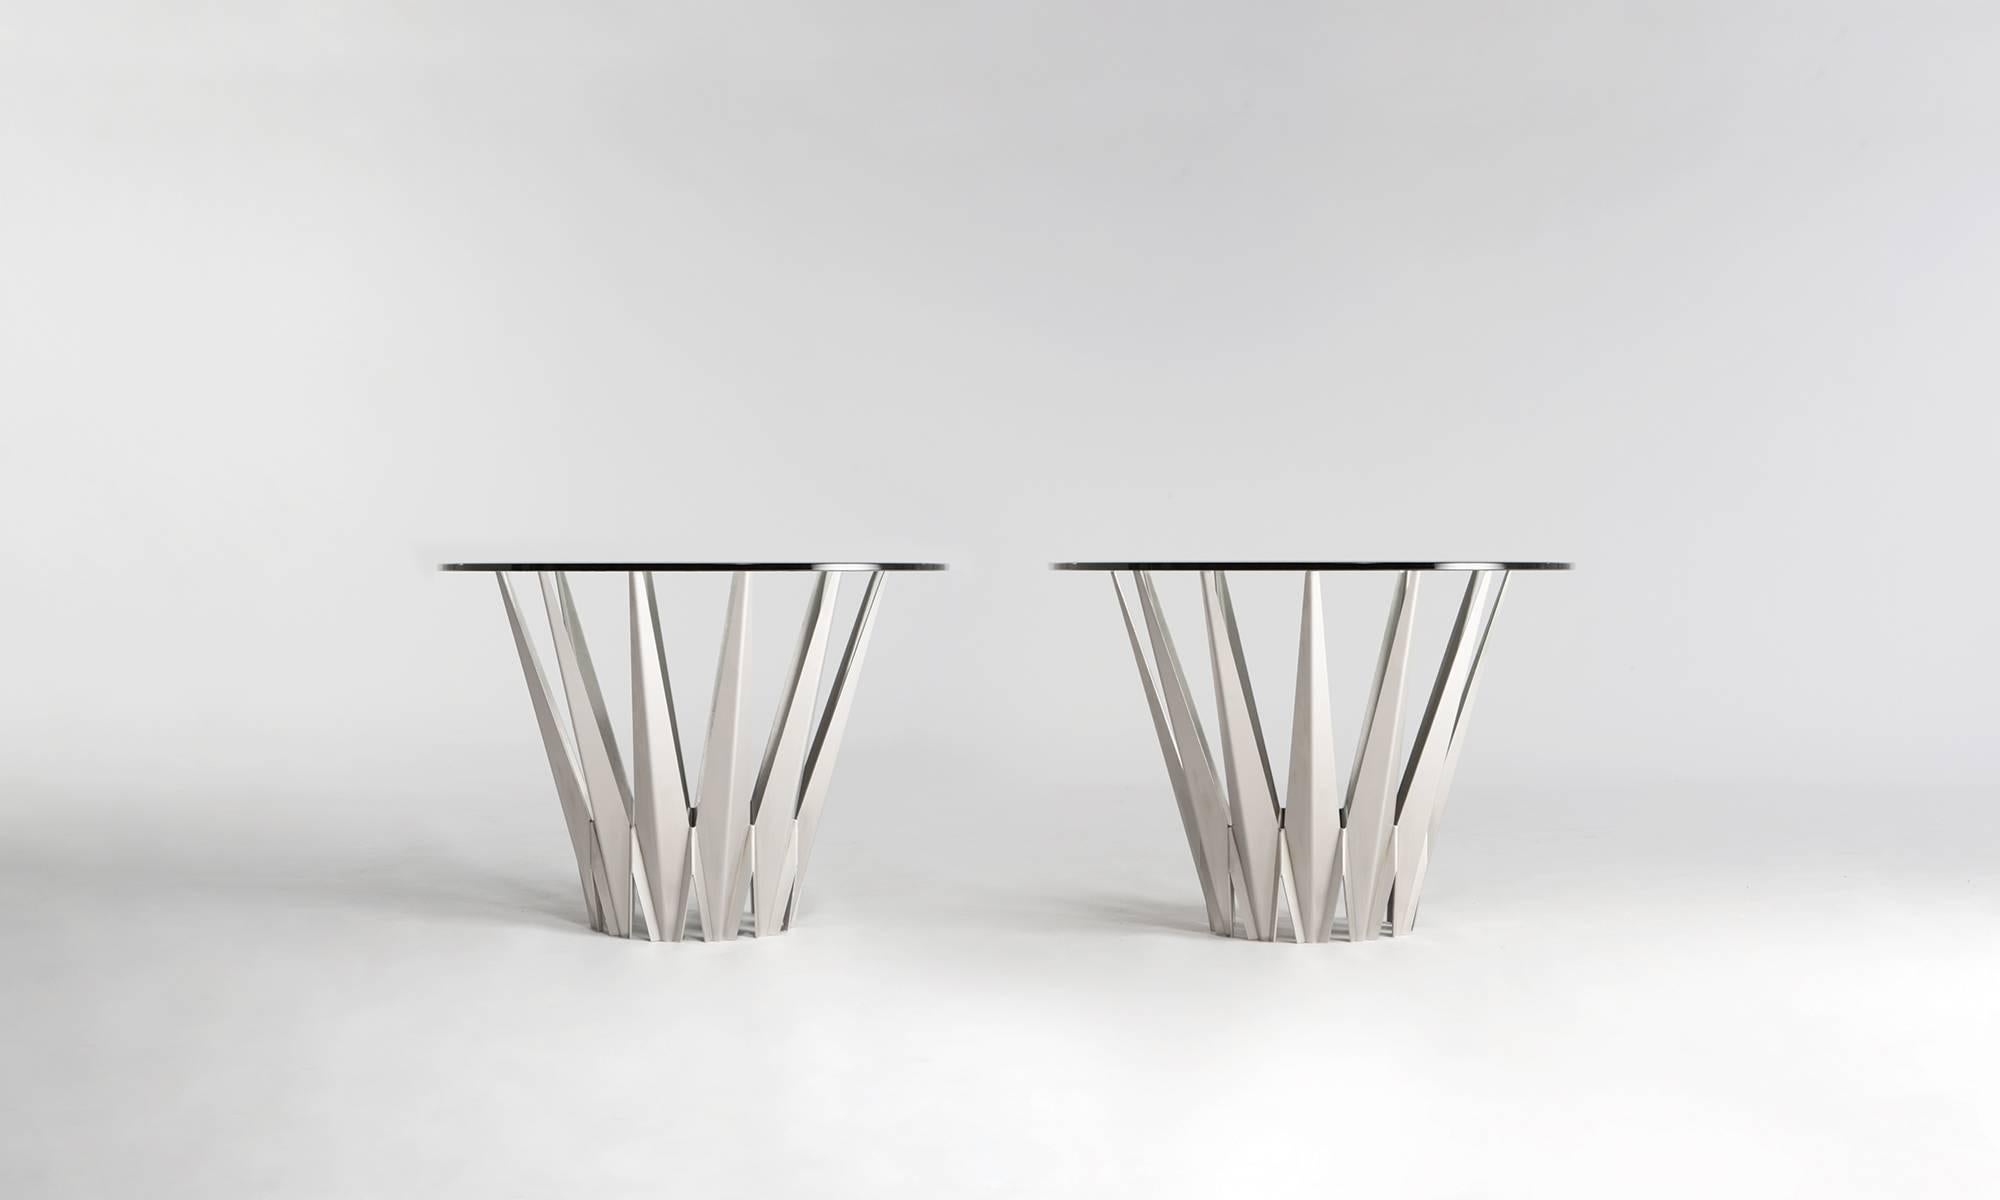 Pair of Custom Stainless Steel Krystalline Side Tables / Made to Order 8